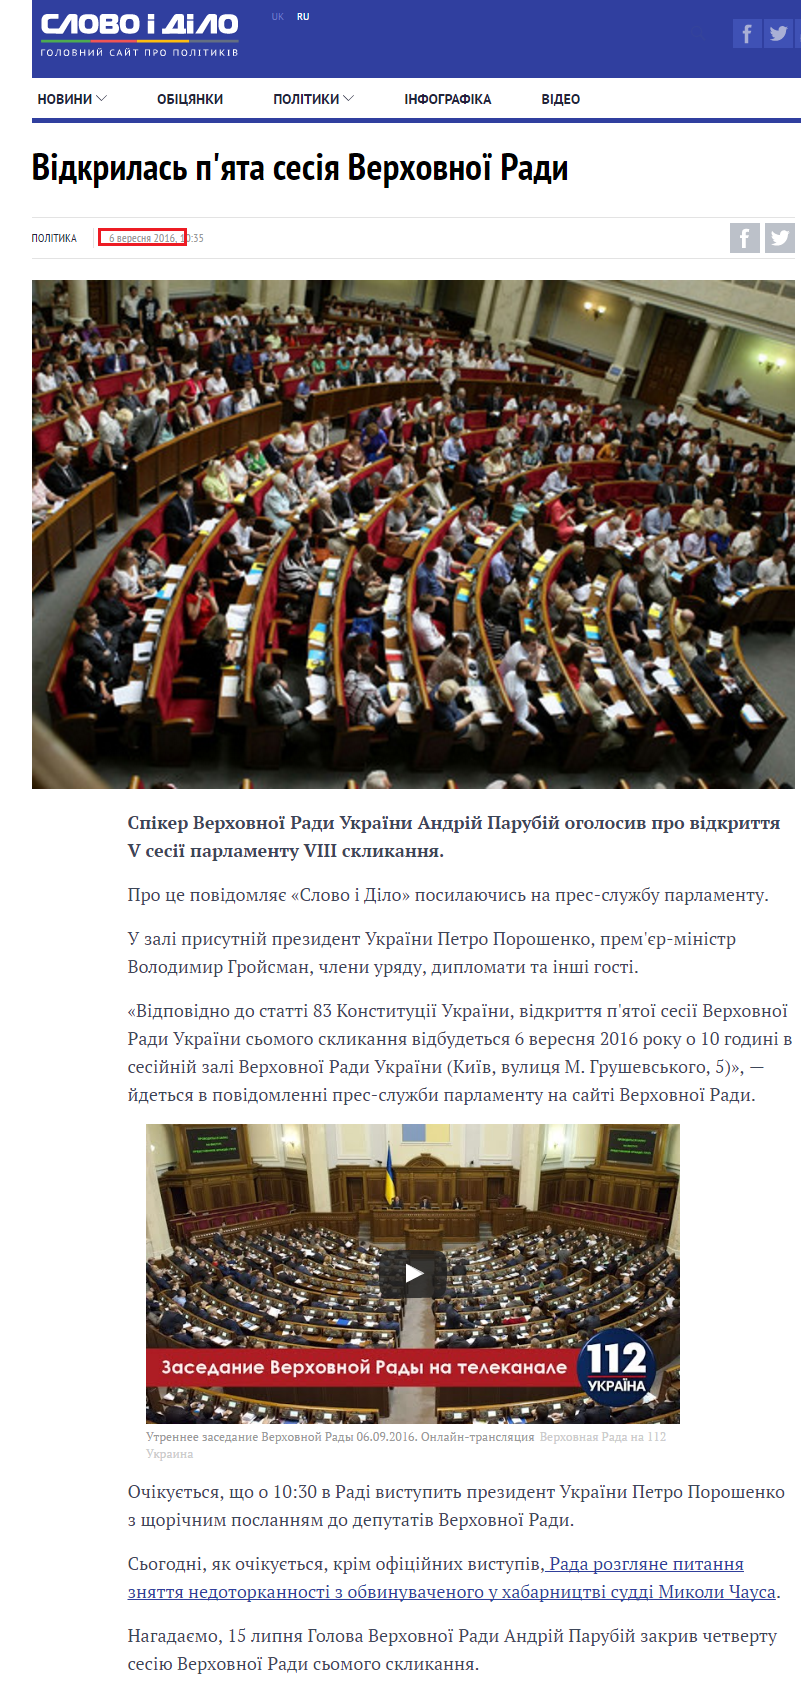 http://www.slovoidilo.ua/2016/09/06/novyna/polityka/vidkrylasya-pyata-sesiya-verxovnoyi-rady